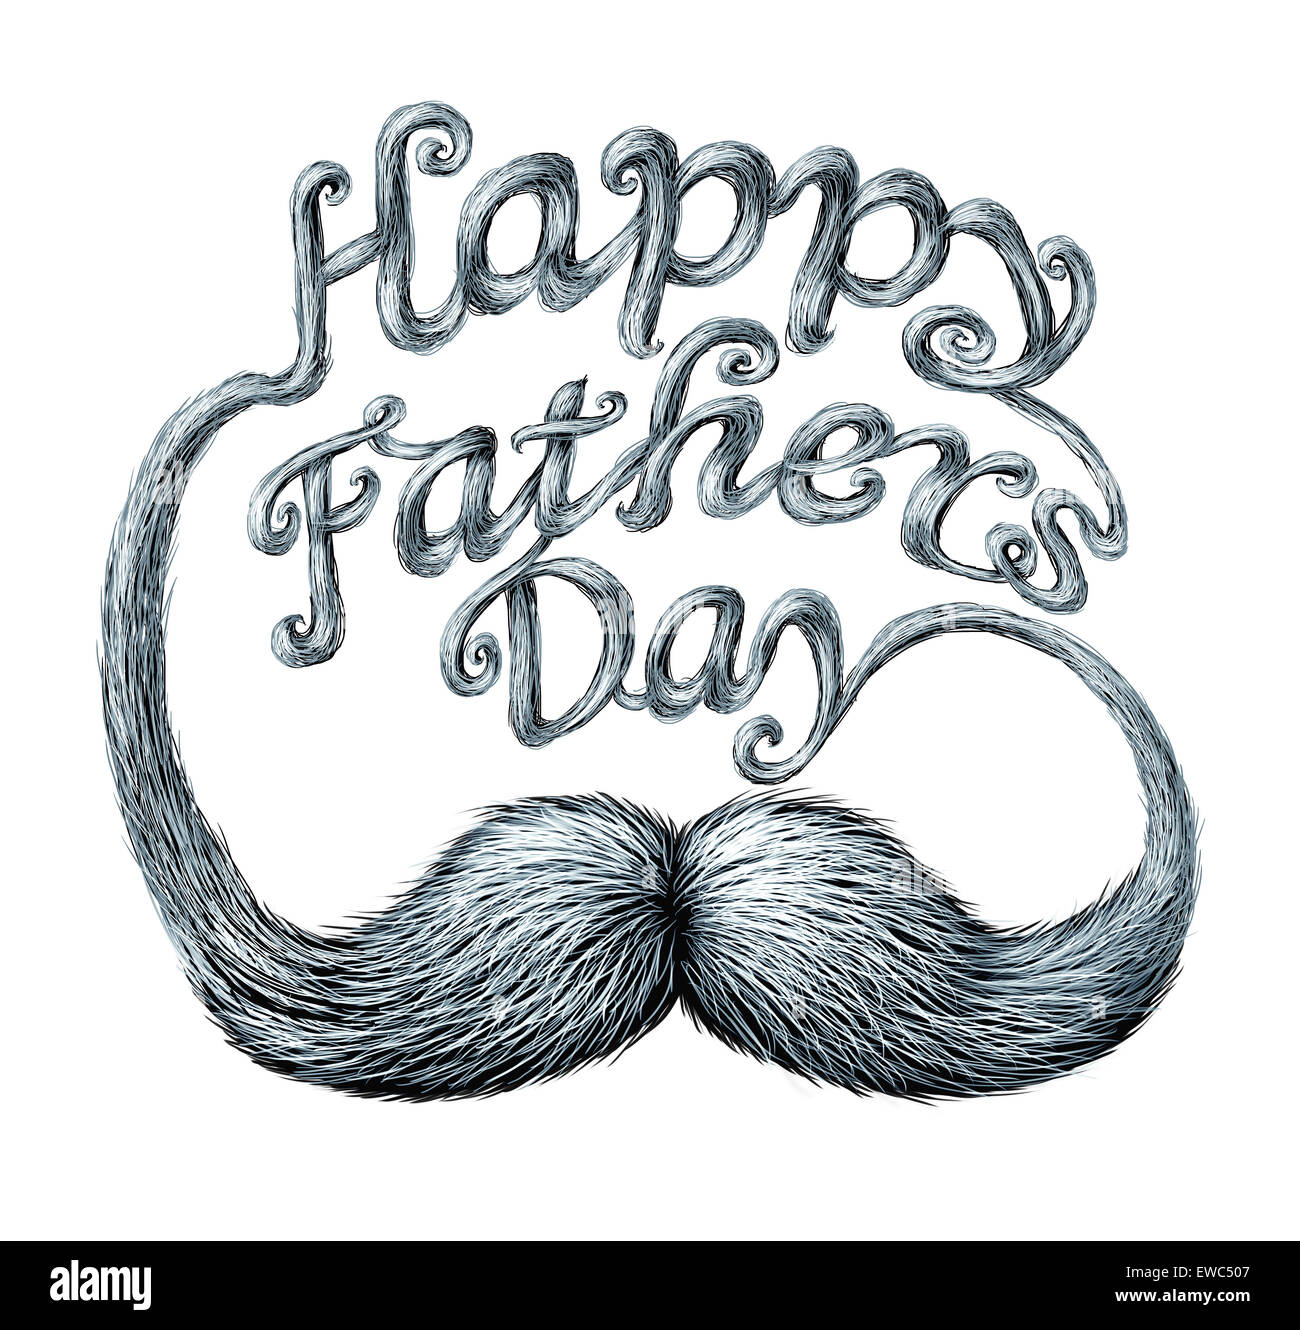 Día del padre símbolo y concepto como gracias al mejor papá mensaje de amor por ser un gran padre como un bigote blanco humano con largos bigotes en forma de texto escrito. Foto de stock